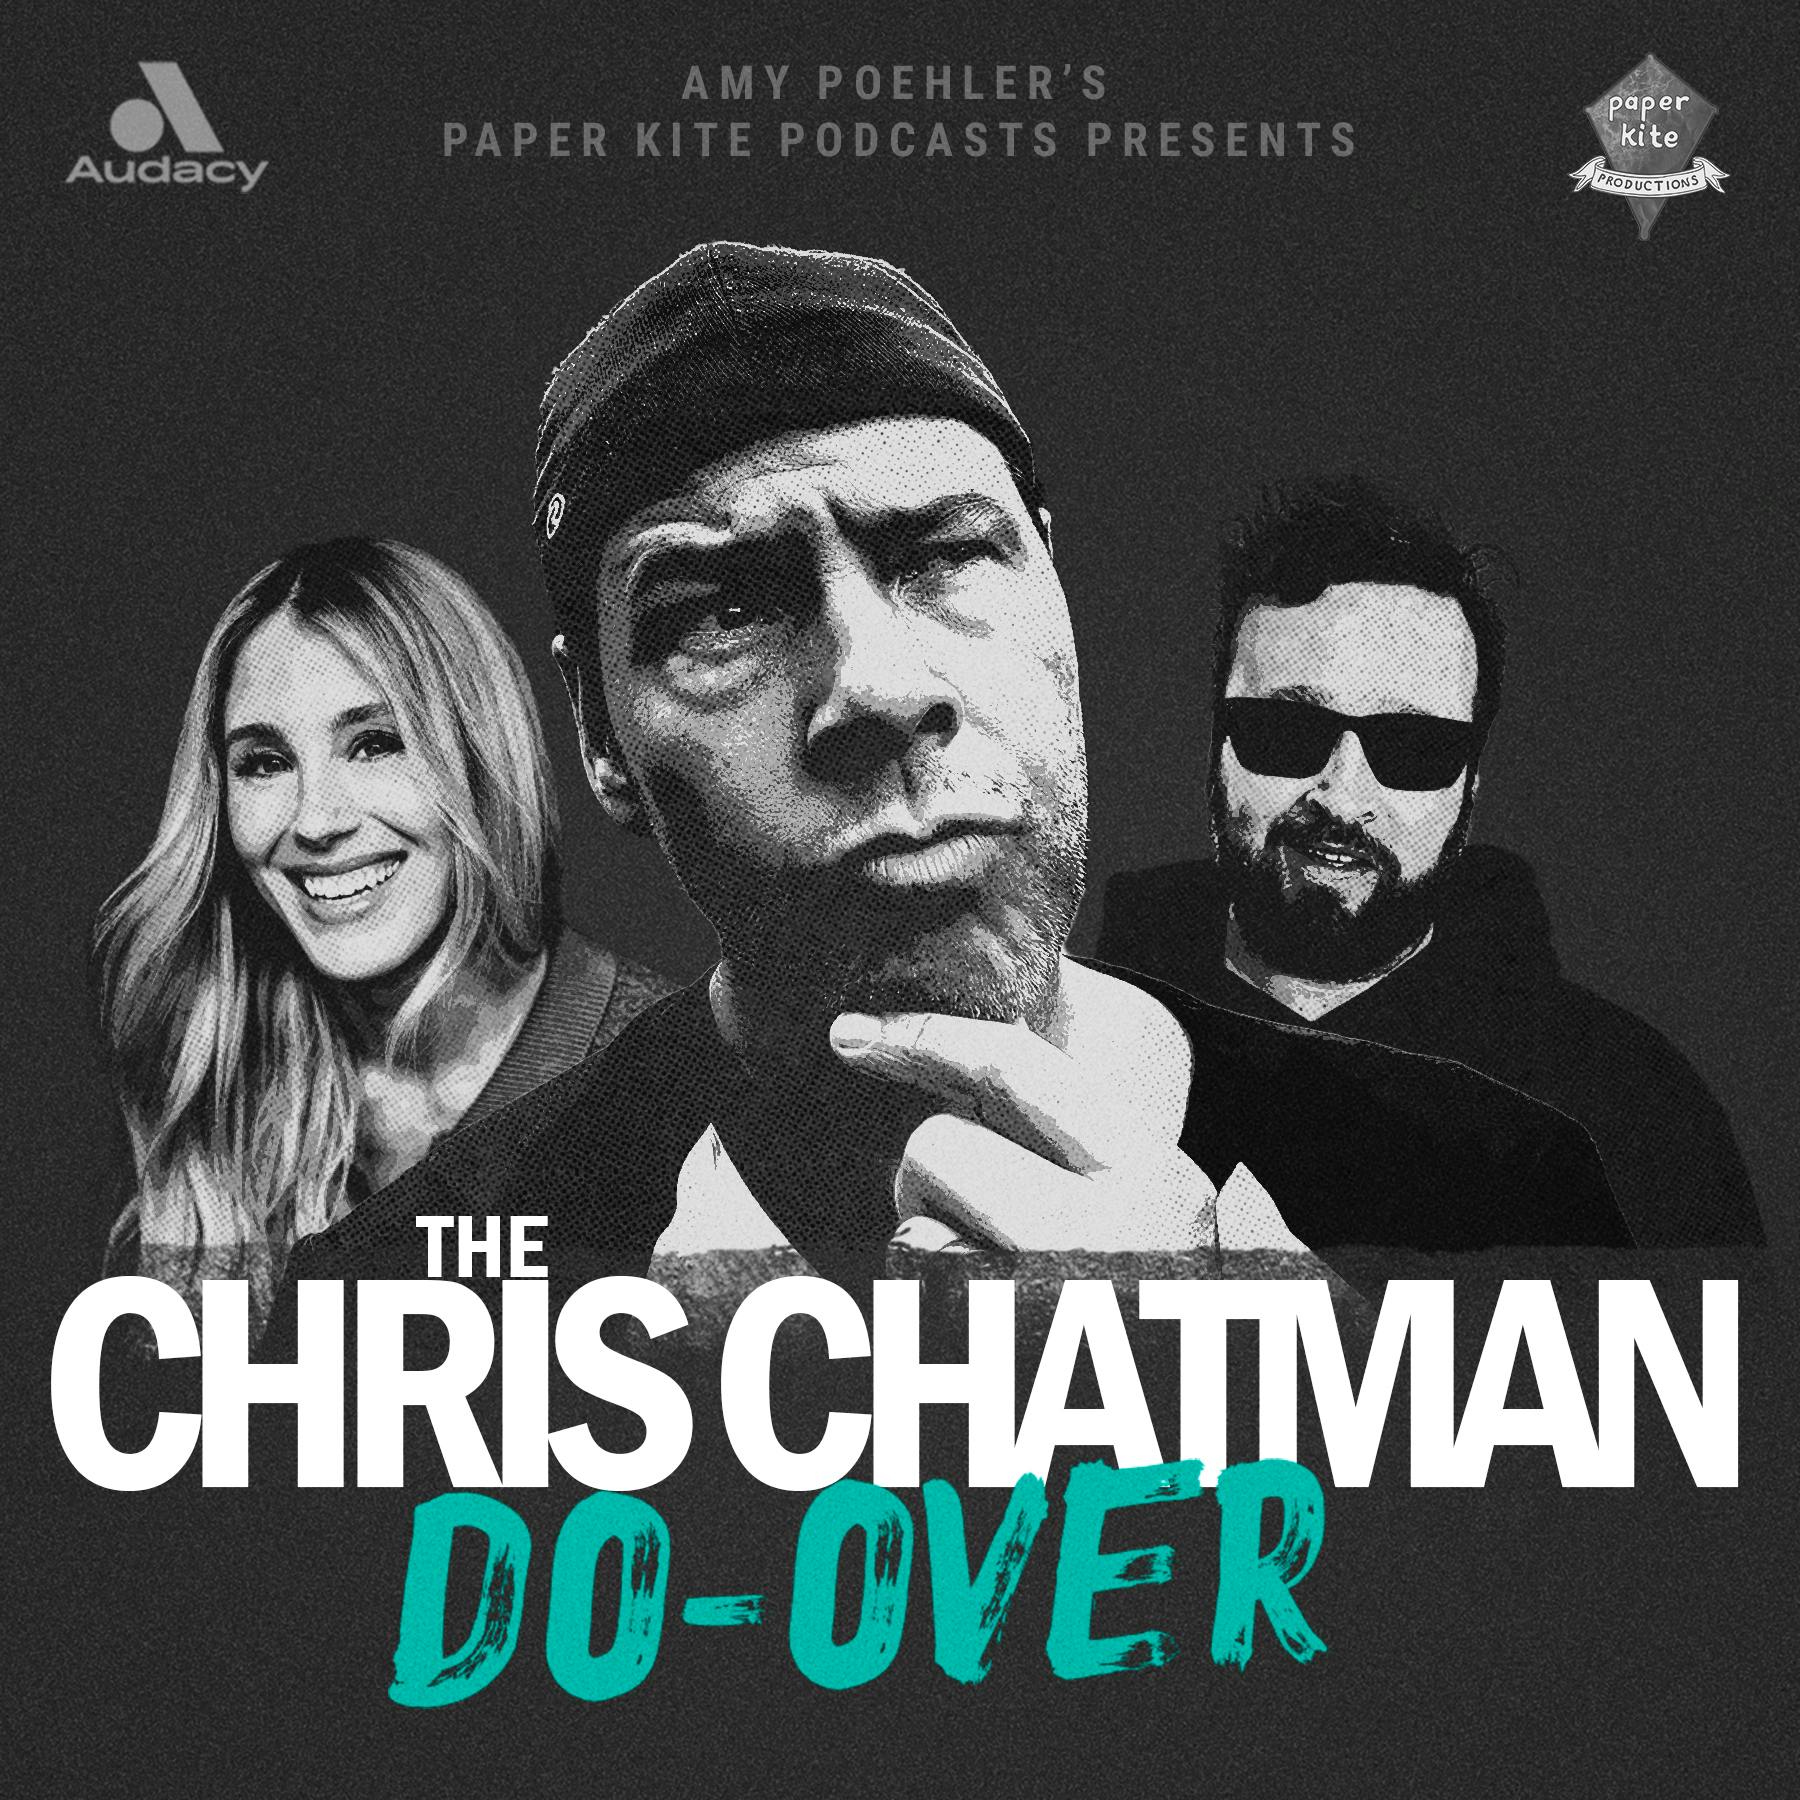 The Chris Chatman Do-Over - 7. Social Media